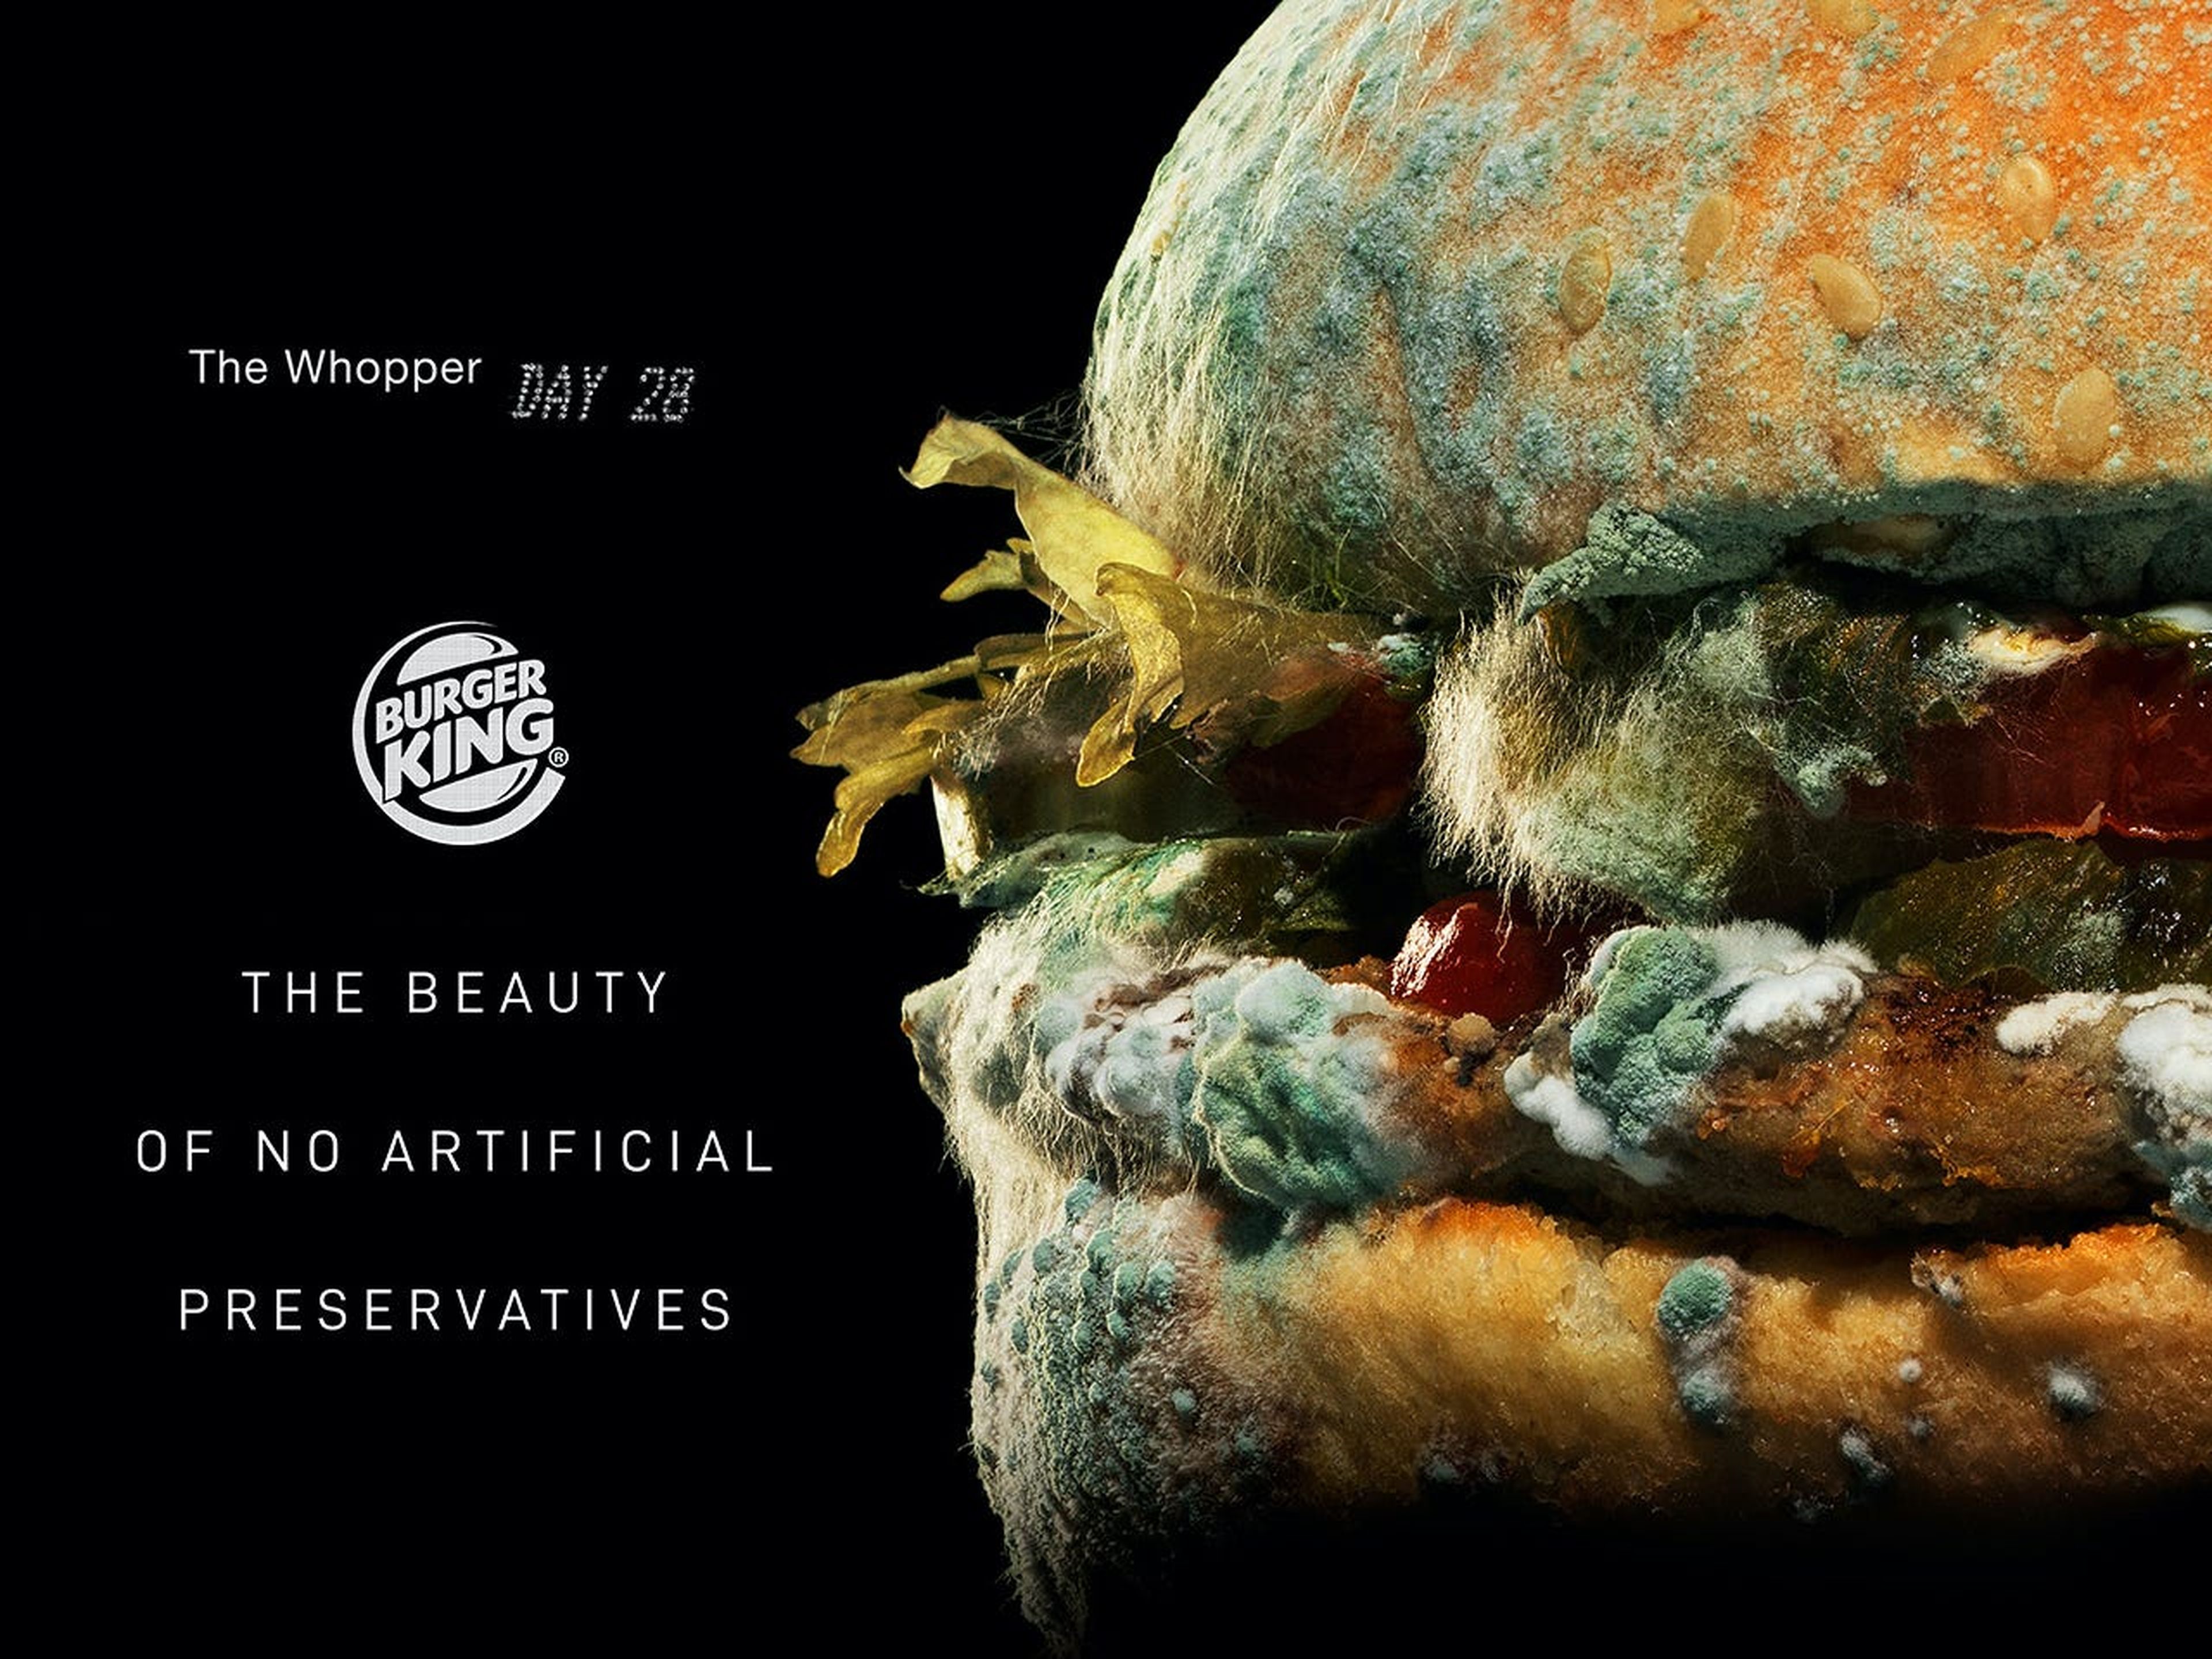 La campaña "Whopper mohoso" de Burger King muestra el alejamiento que realiza de los conservantes.